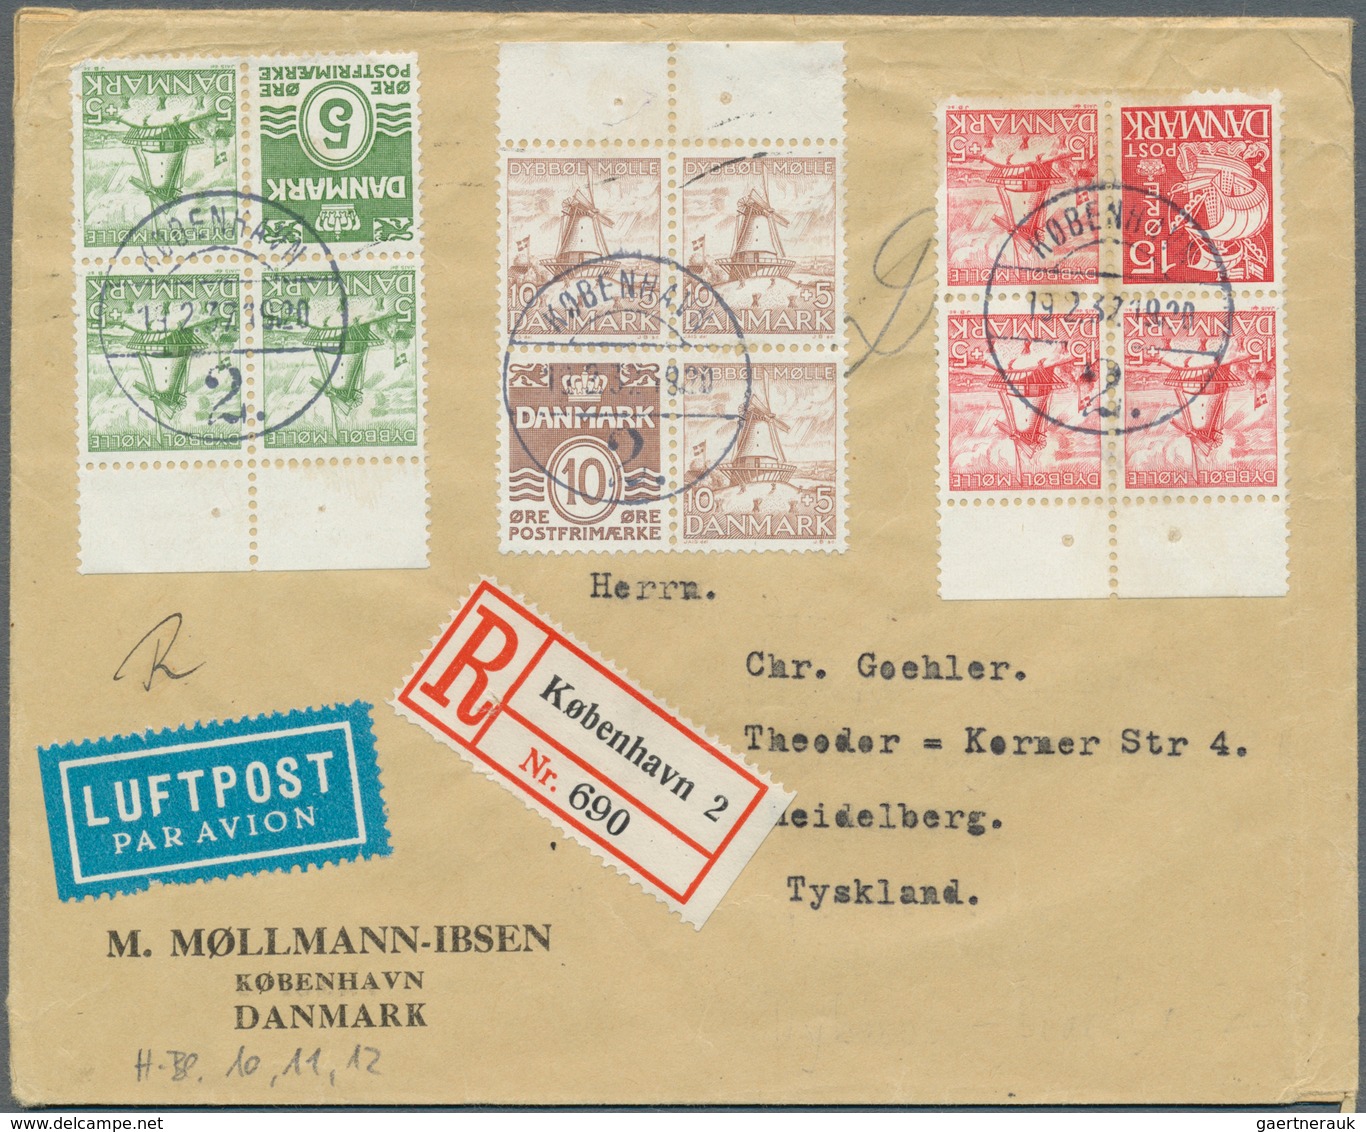 26217 Dänemark: 1835/1969, Sammlung von insgesamt ca. 110 Belegen und einigen losen Marken, angefangen mit